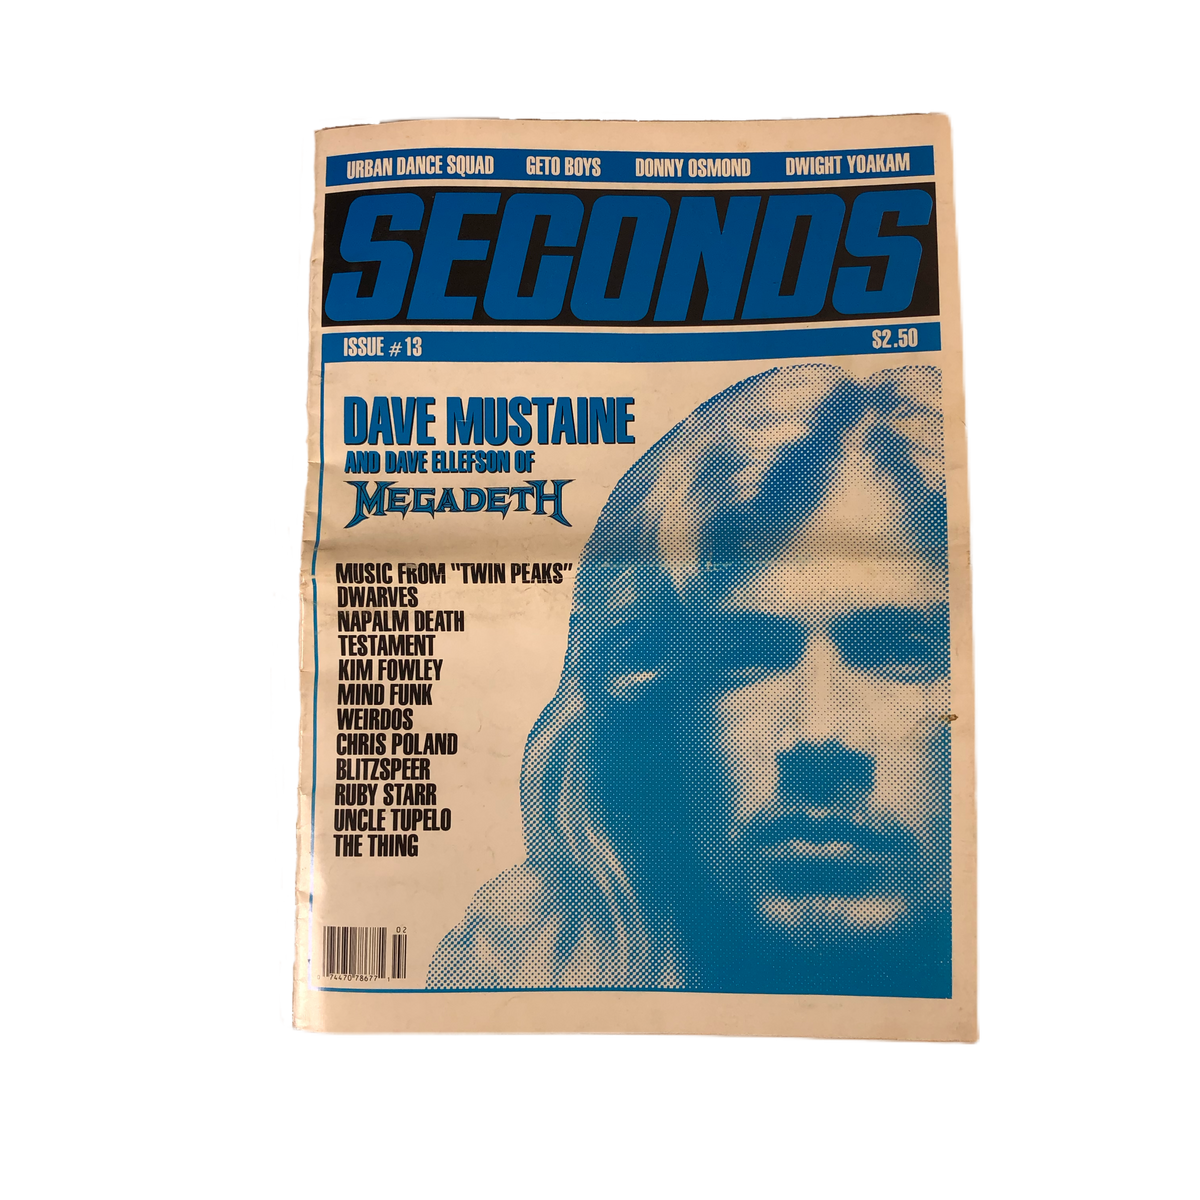 Vintage Seconds Magazine &quot;Issue 13&quot;